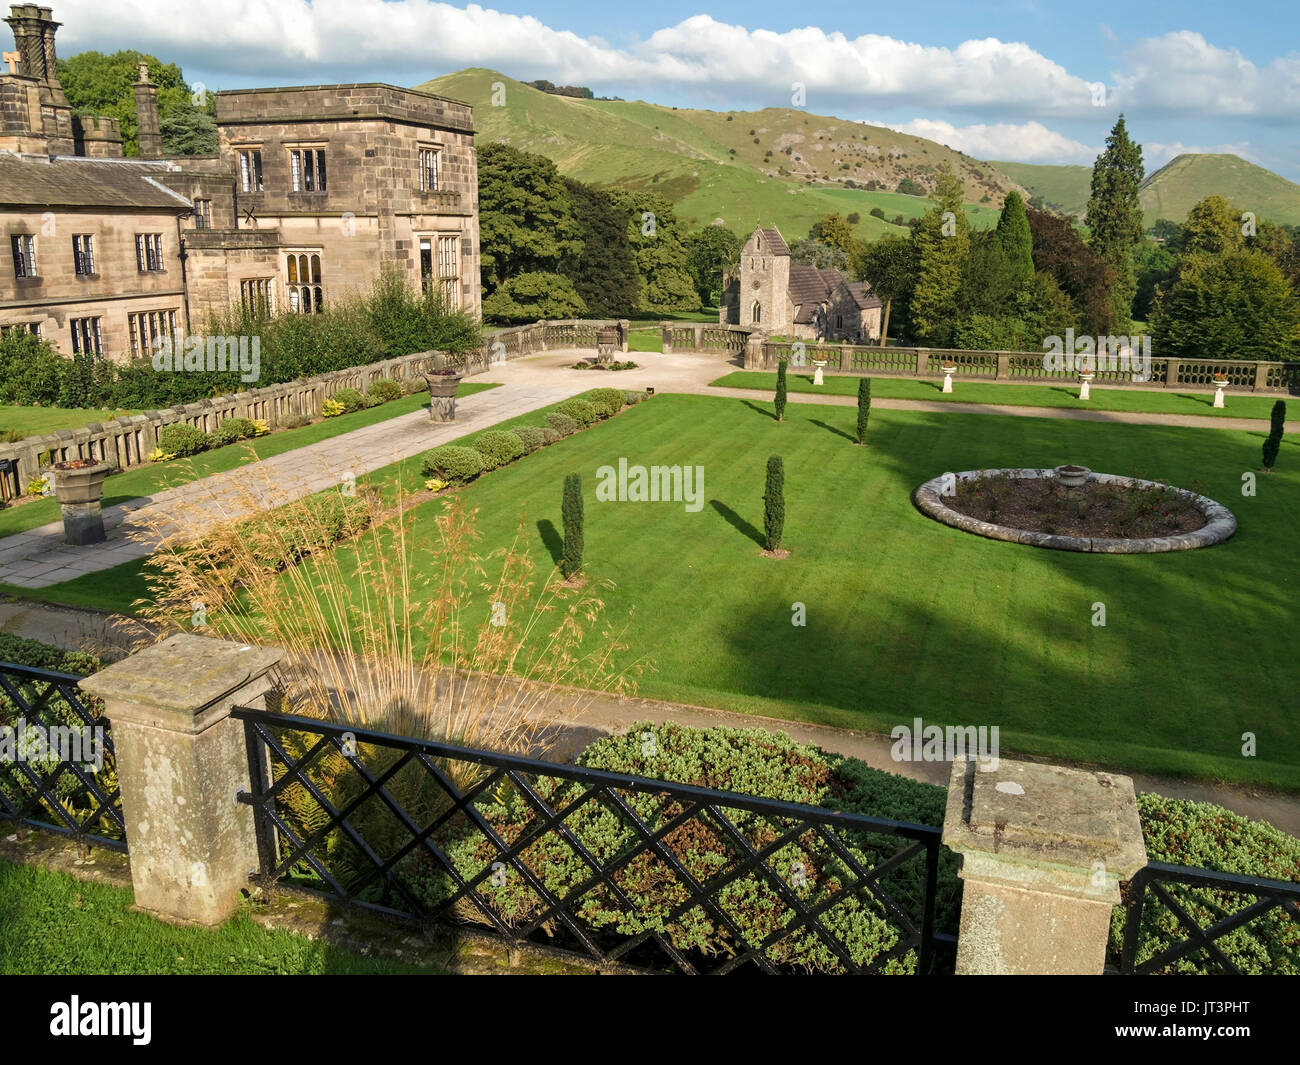 Jardin avec pelouse formelle à ilam hall, Ilam, Derbyshire, Angleterre, RU Banque D'Images